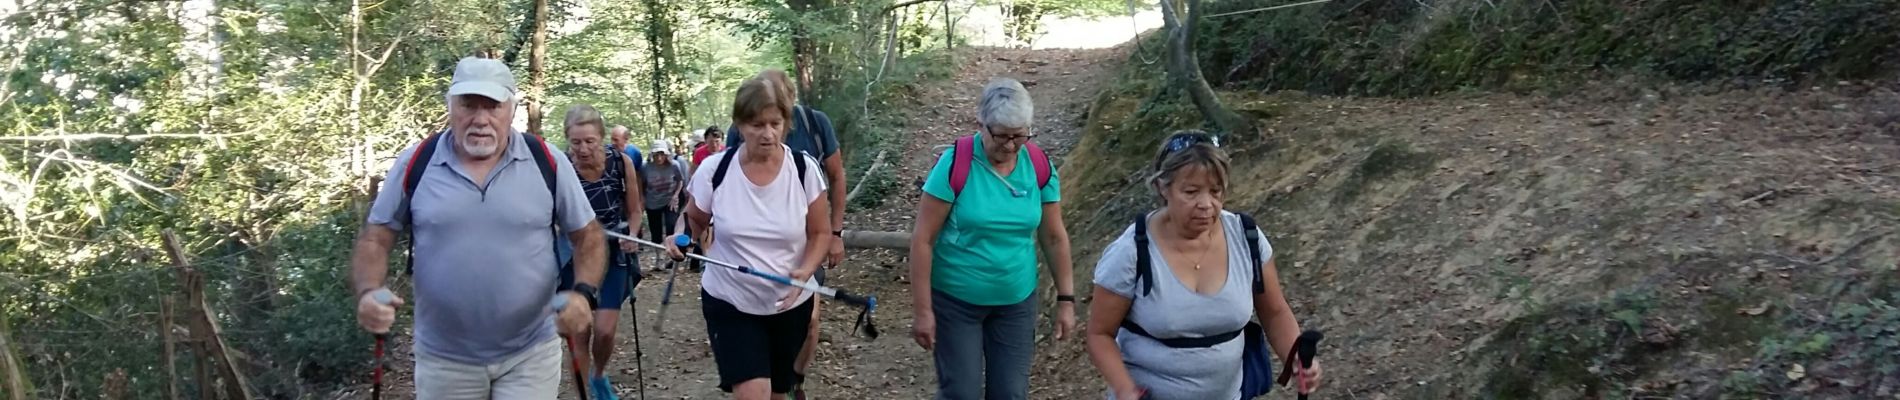 Trail Walking Rontignon - UZOS boucle de la glandee M1 le 16/09/2020 la bonne - Photo